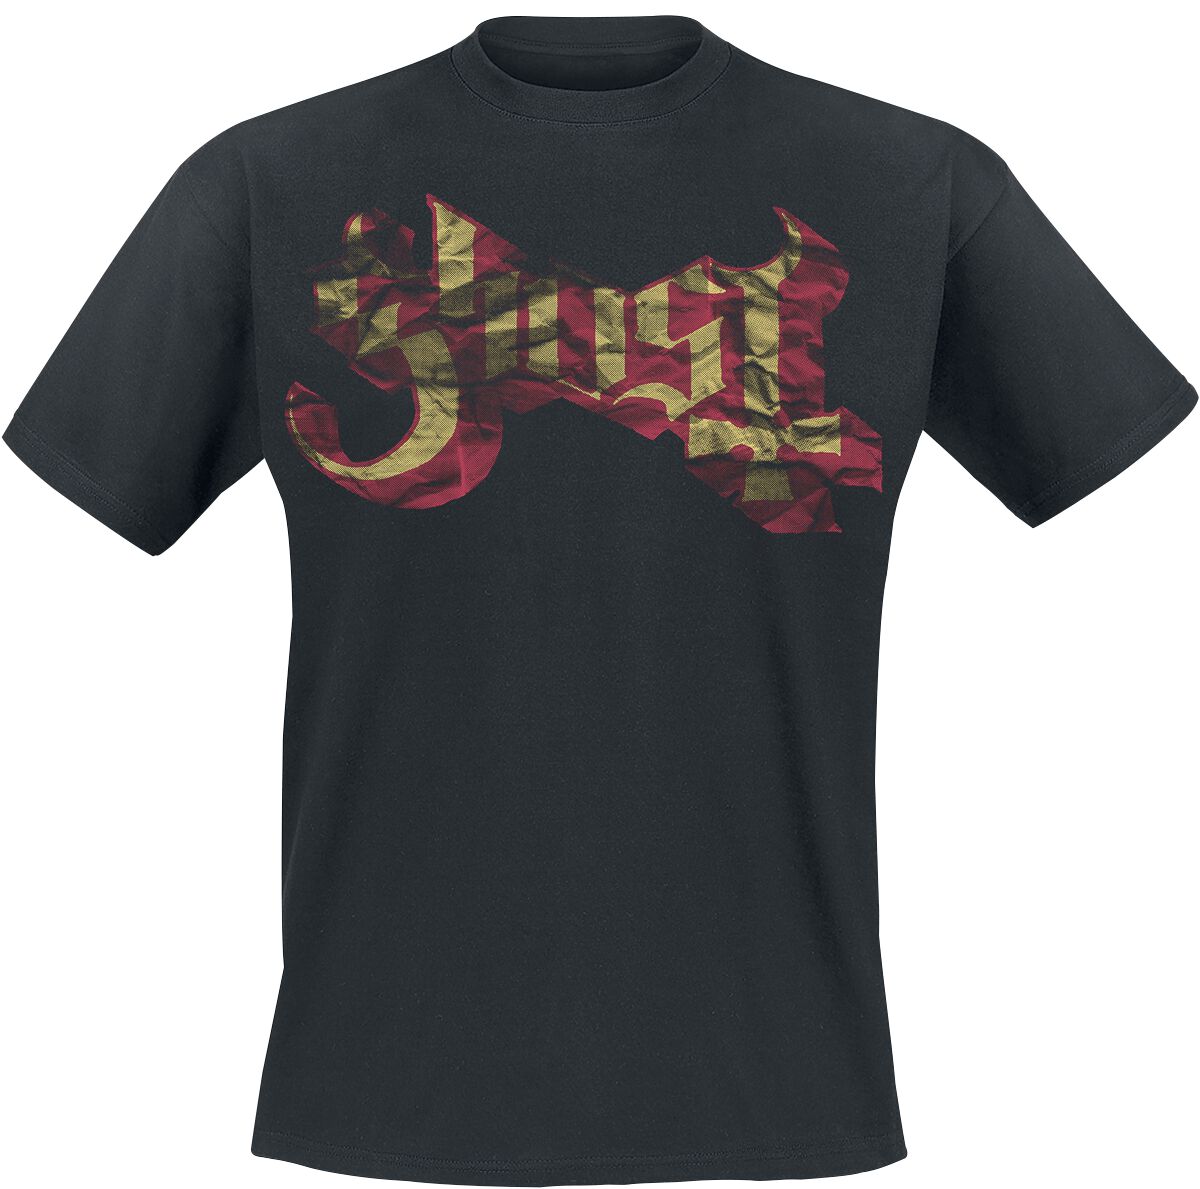 Ghost T-Shirt - Large Logo - S bis XXL - für Männer - Größe XXL - schwarz  - Lizenziertes Merchandise!